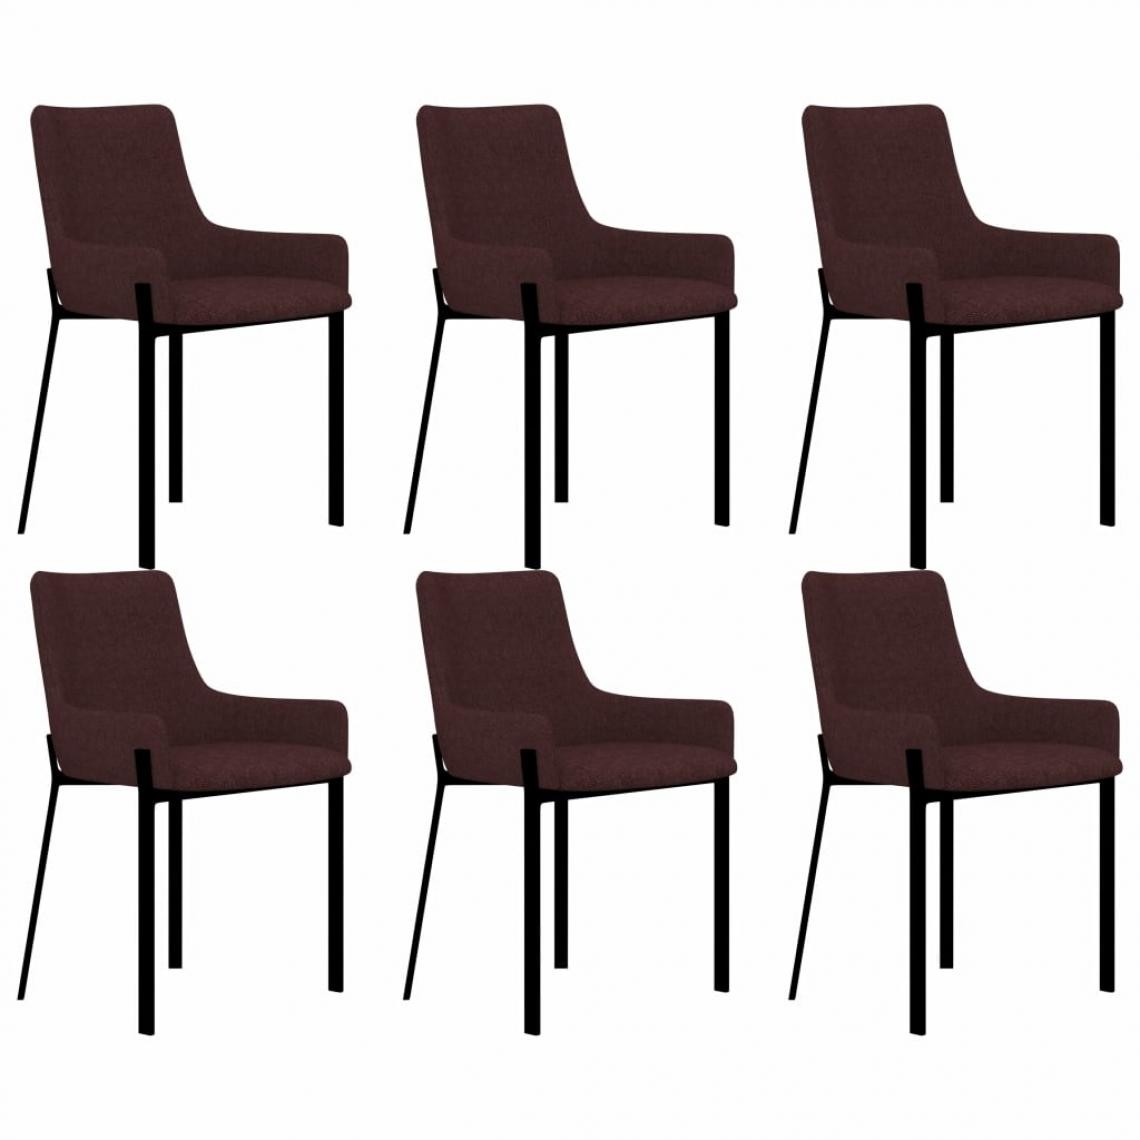 Decoshop26 - Lot de 6 chaises de salle à manger cuisine style classique en tissu bordeaux CDS022248 - Chaises